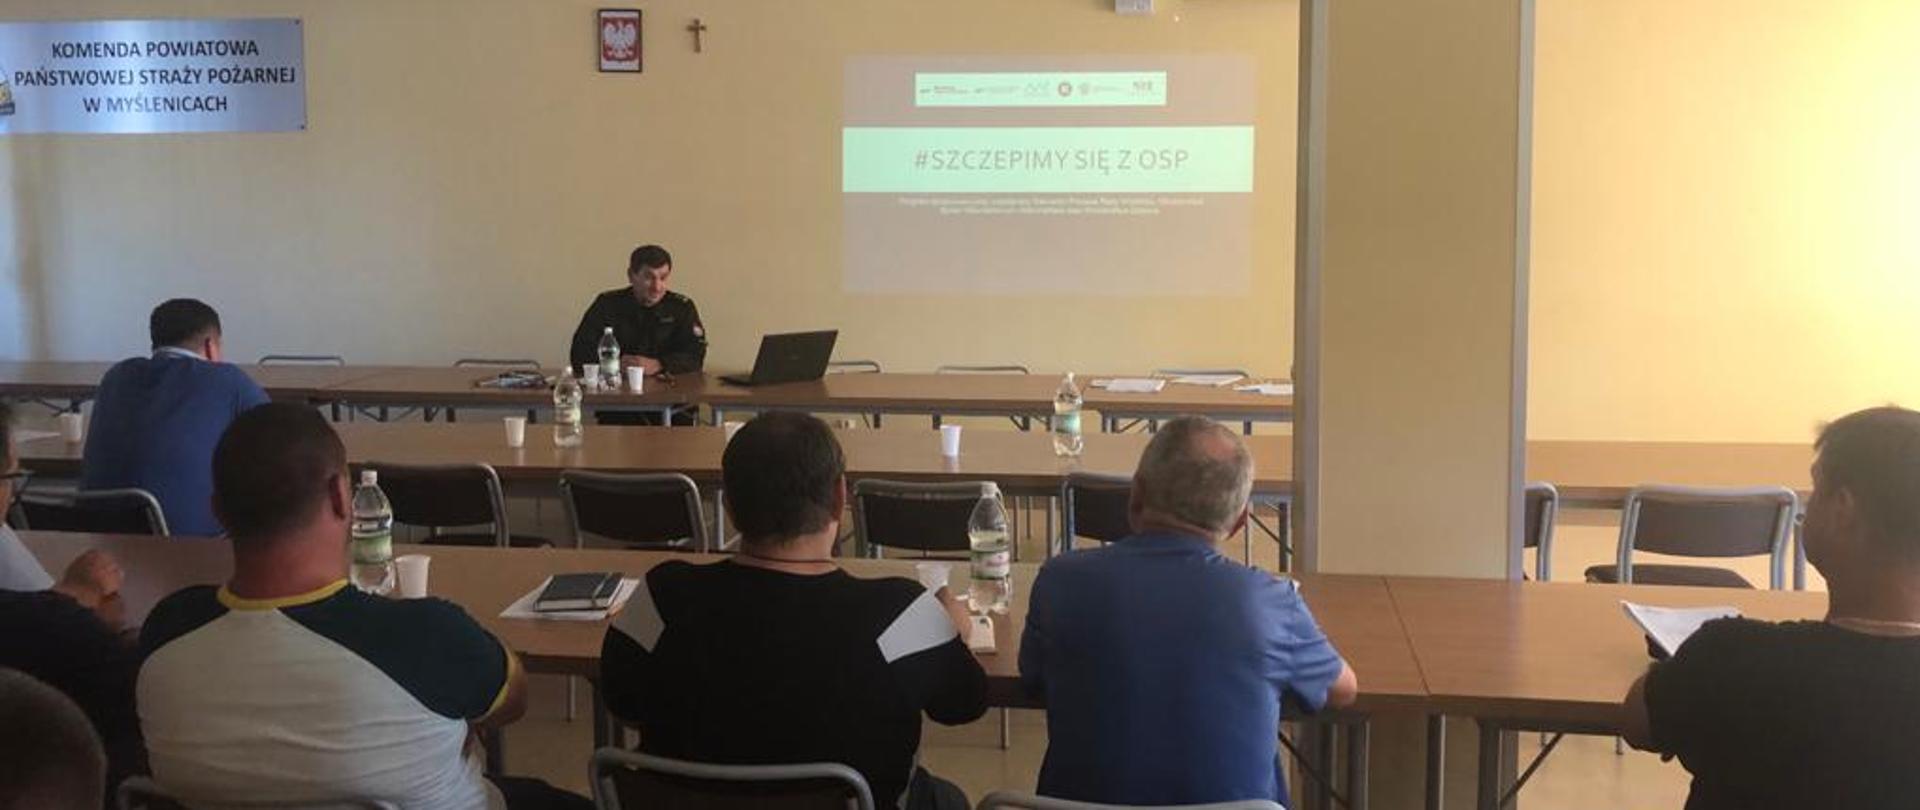 Zdjęcie przedstawia salę szkoleniową w Komendzie Powiatowej PSP w Myślenicach. Na ścianie z rzutnika wyświetlona jest nazwa programu. Z-ca Komendanta Powiatowego przedstawia projekt siedzącym druhom z jednostek OSP.